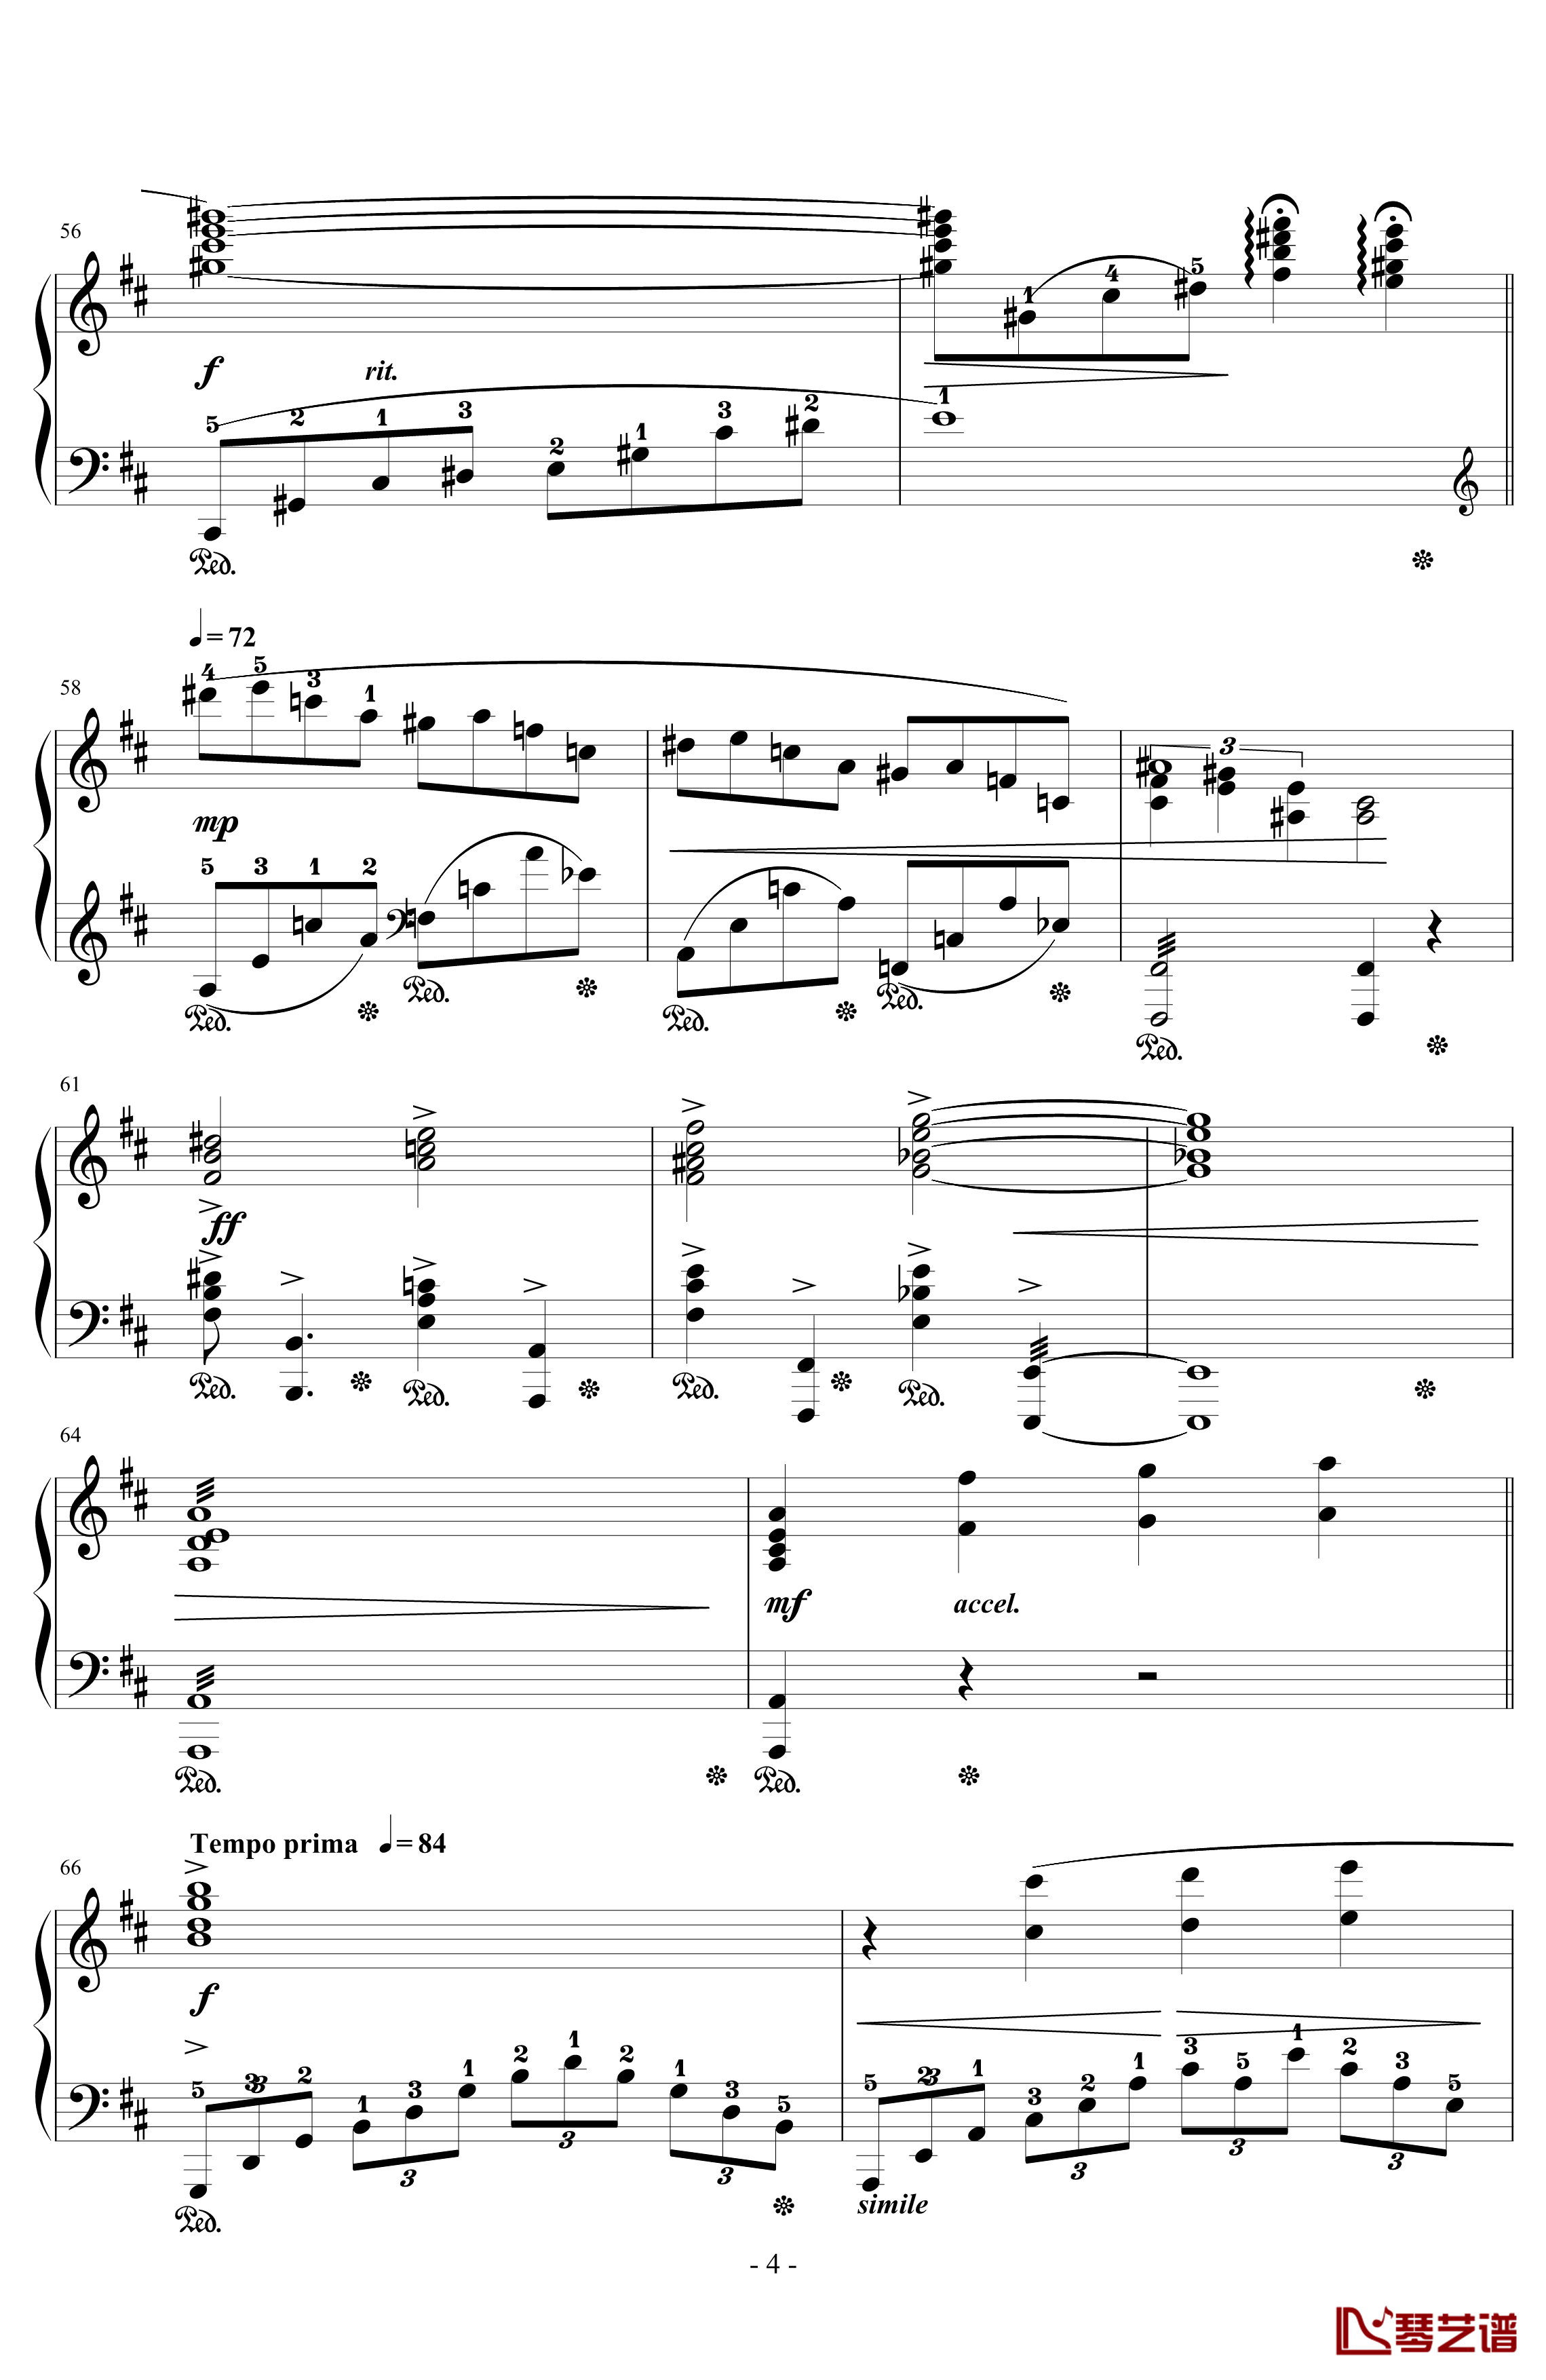 とどかぬ想い钢琴谱-from FF9 Orchestra Version-植松伸夫4